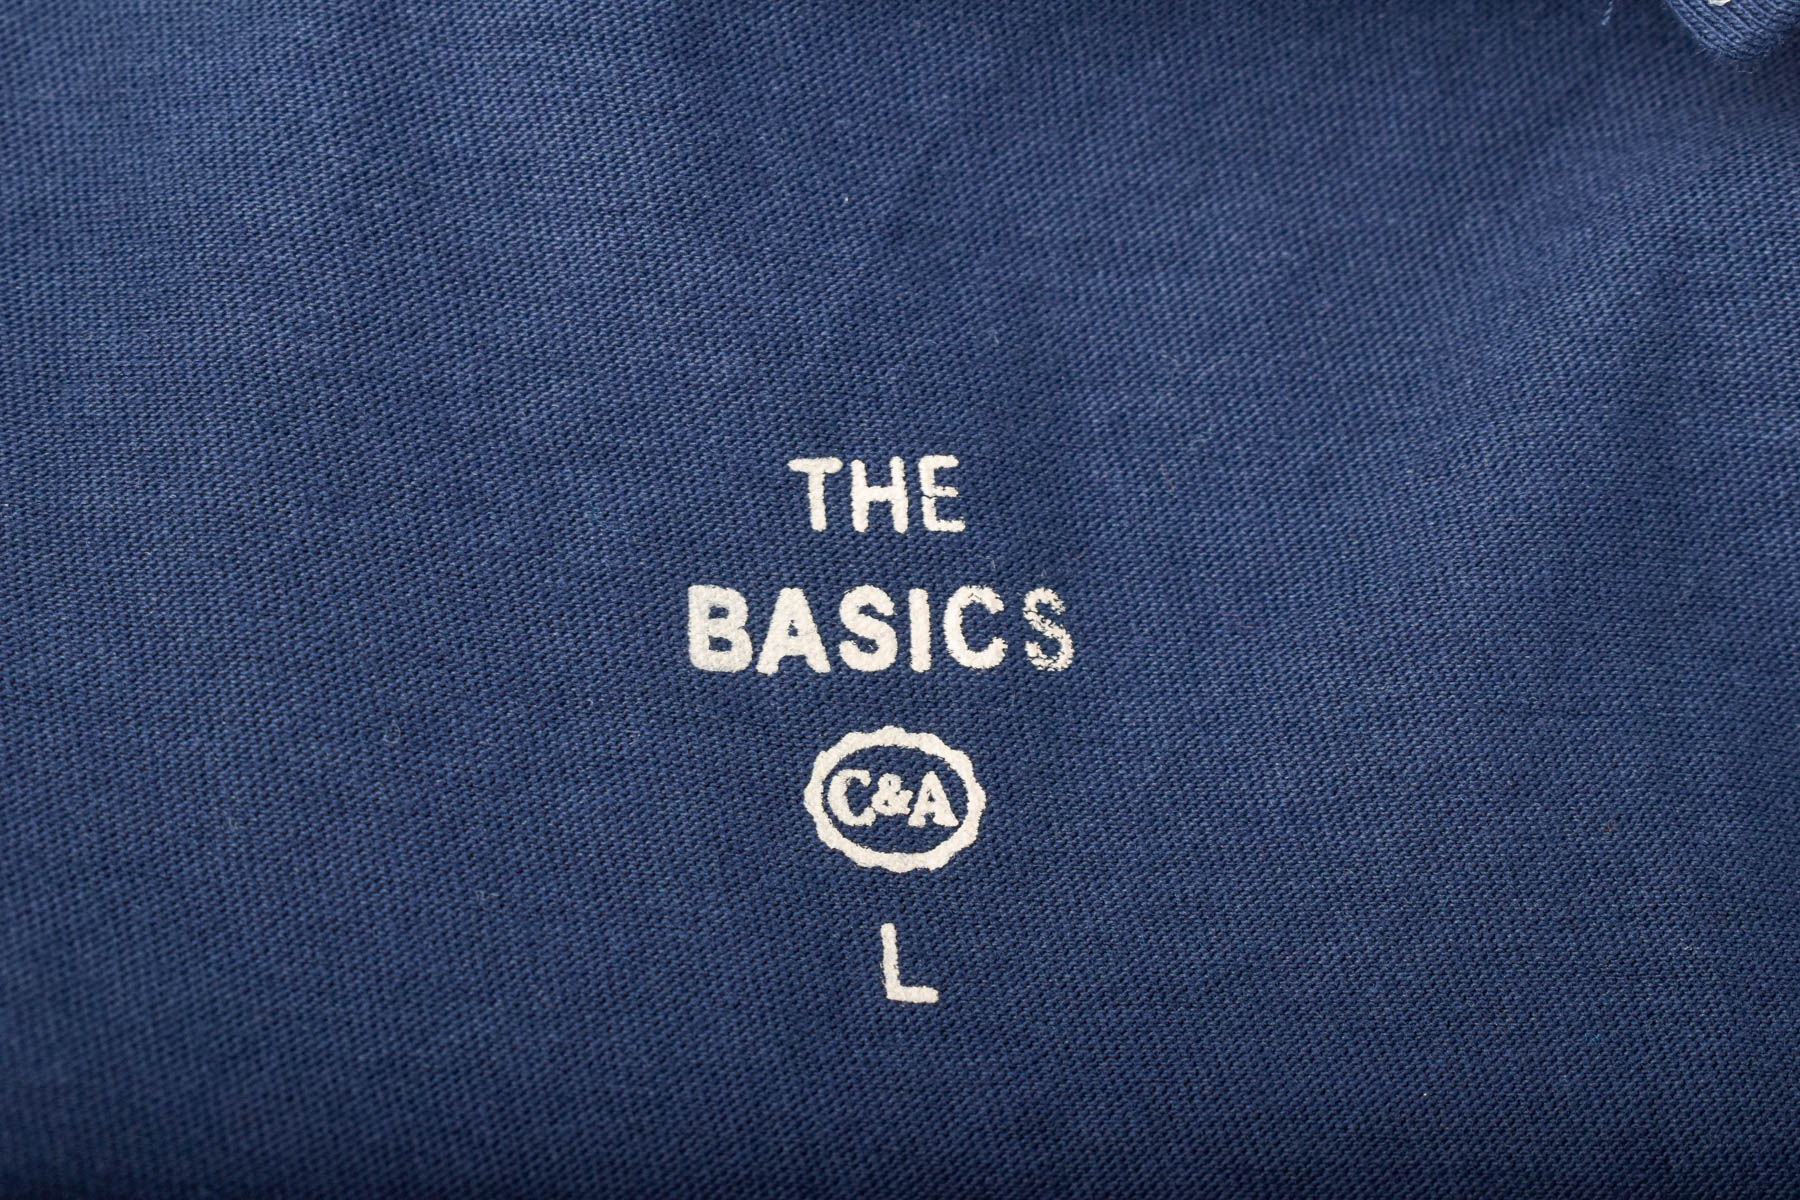 Γυνεκείο τοπ - The Basics x C&A - 2